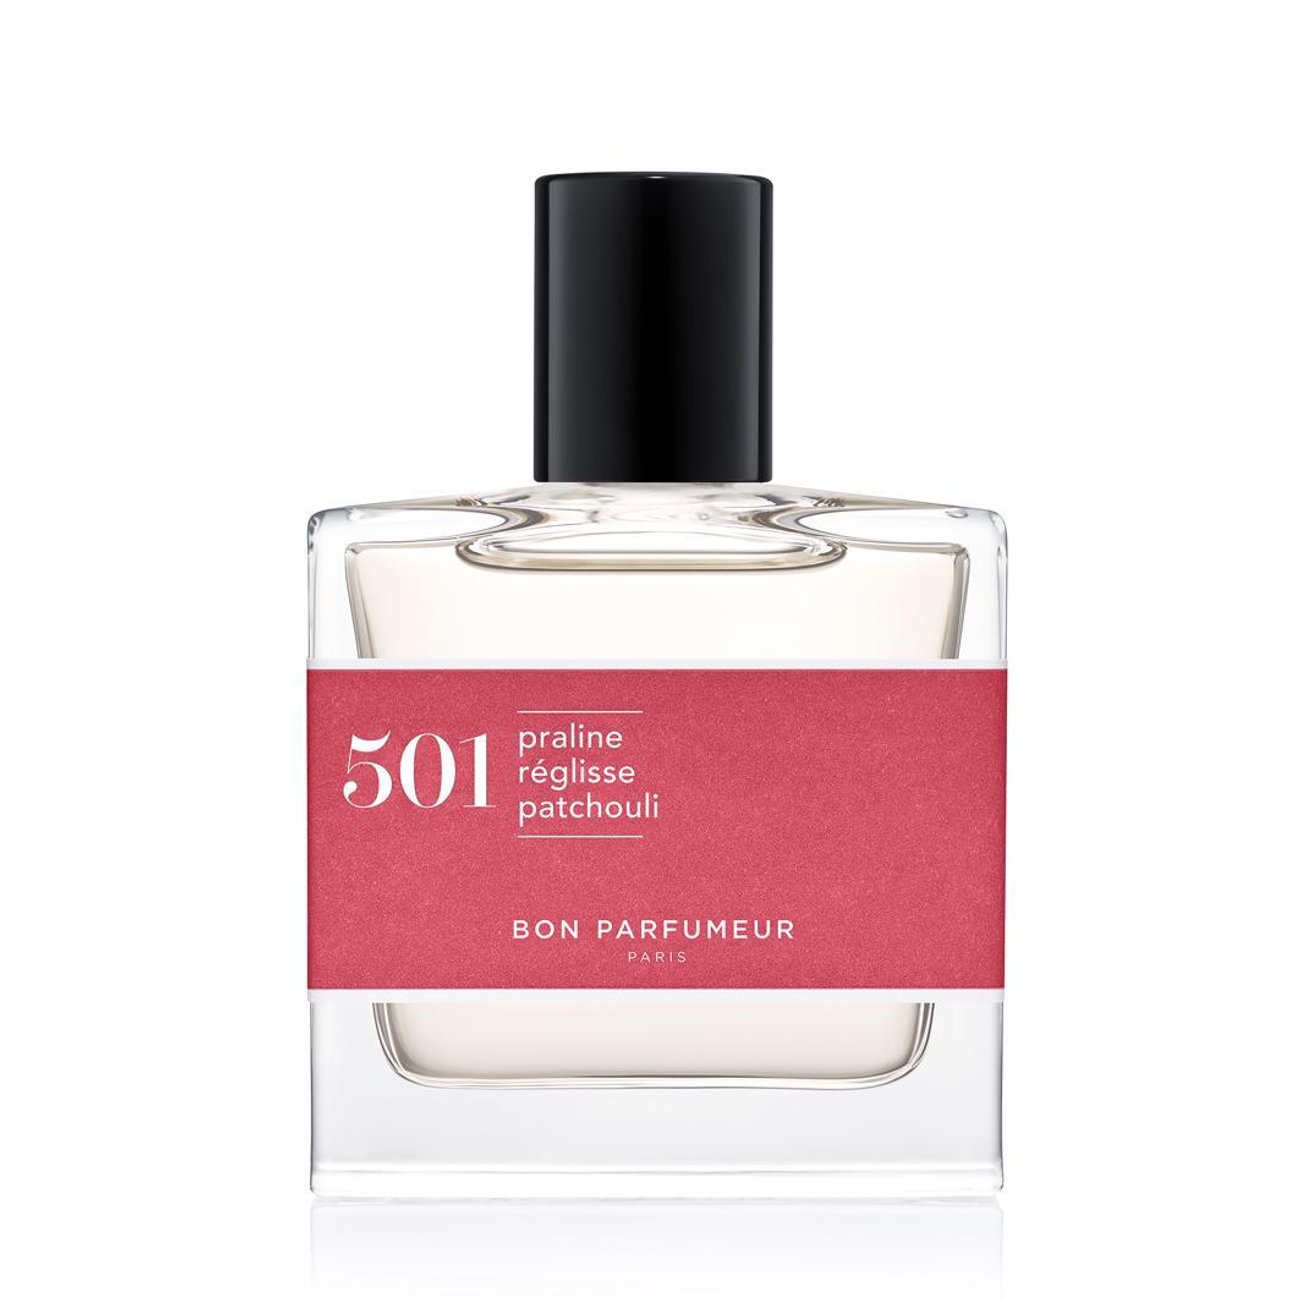 Oriental Nr. 501 von Bon Parfumeur